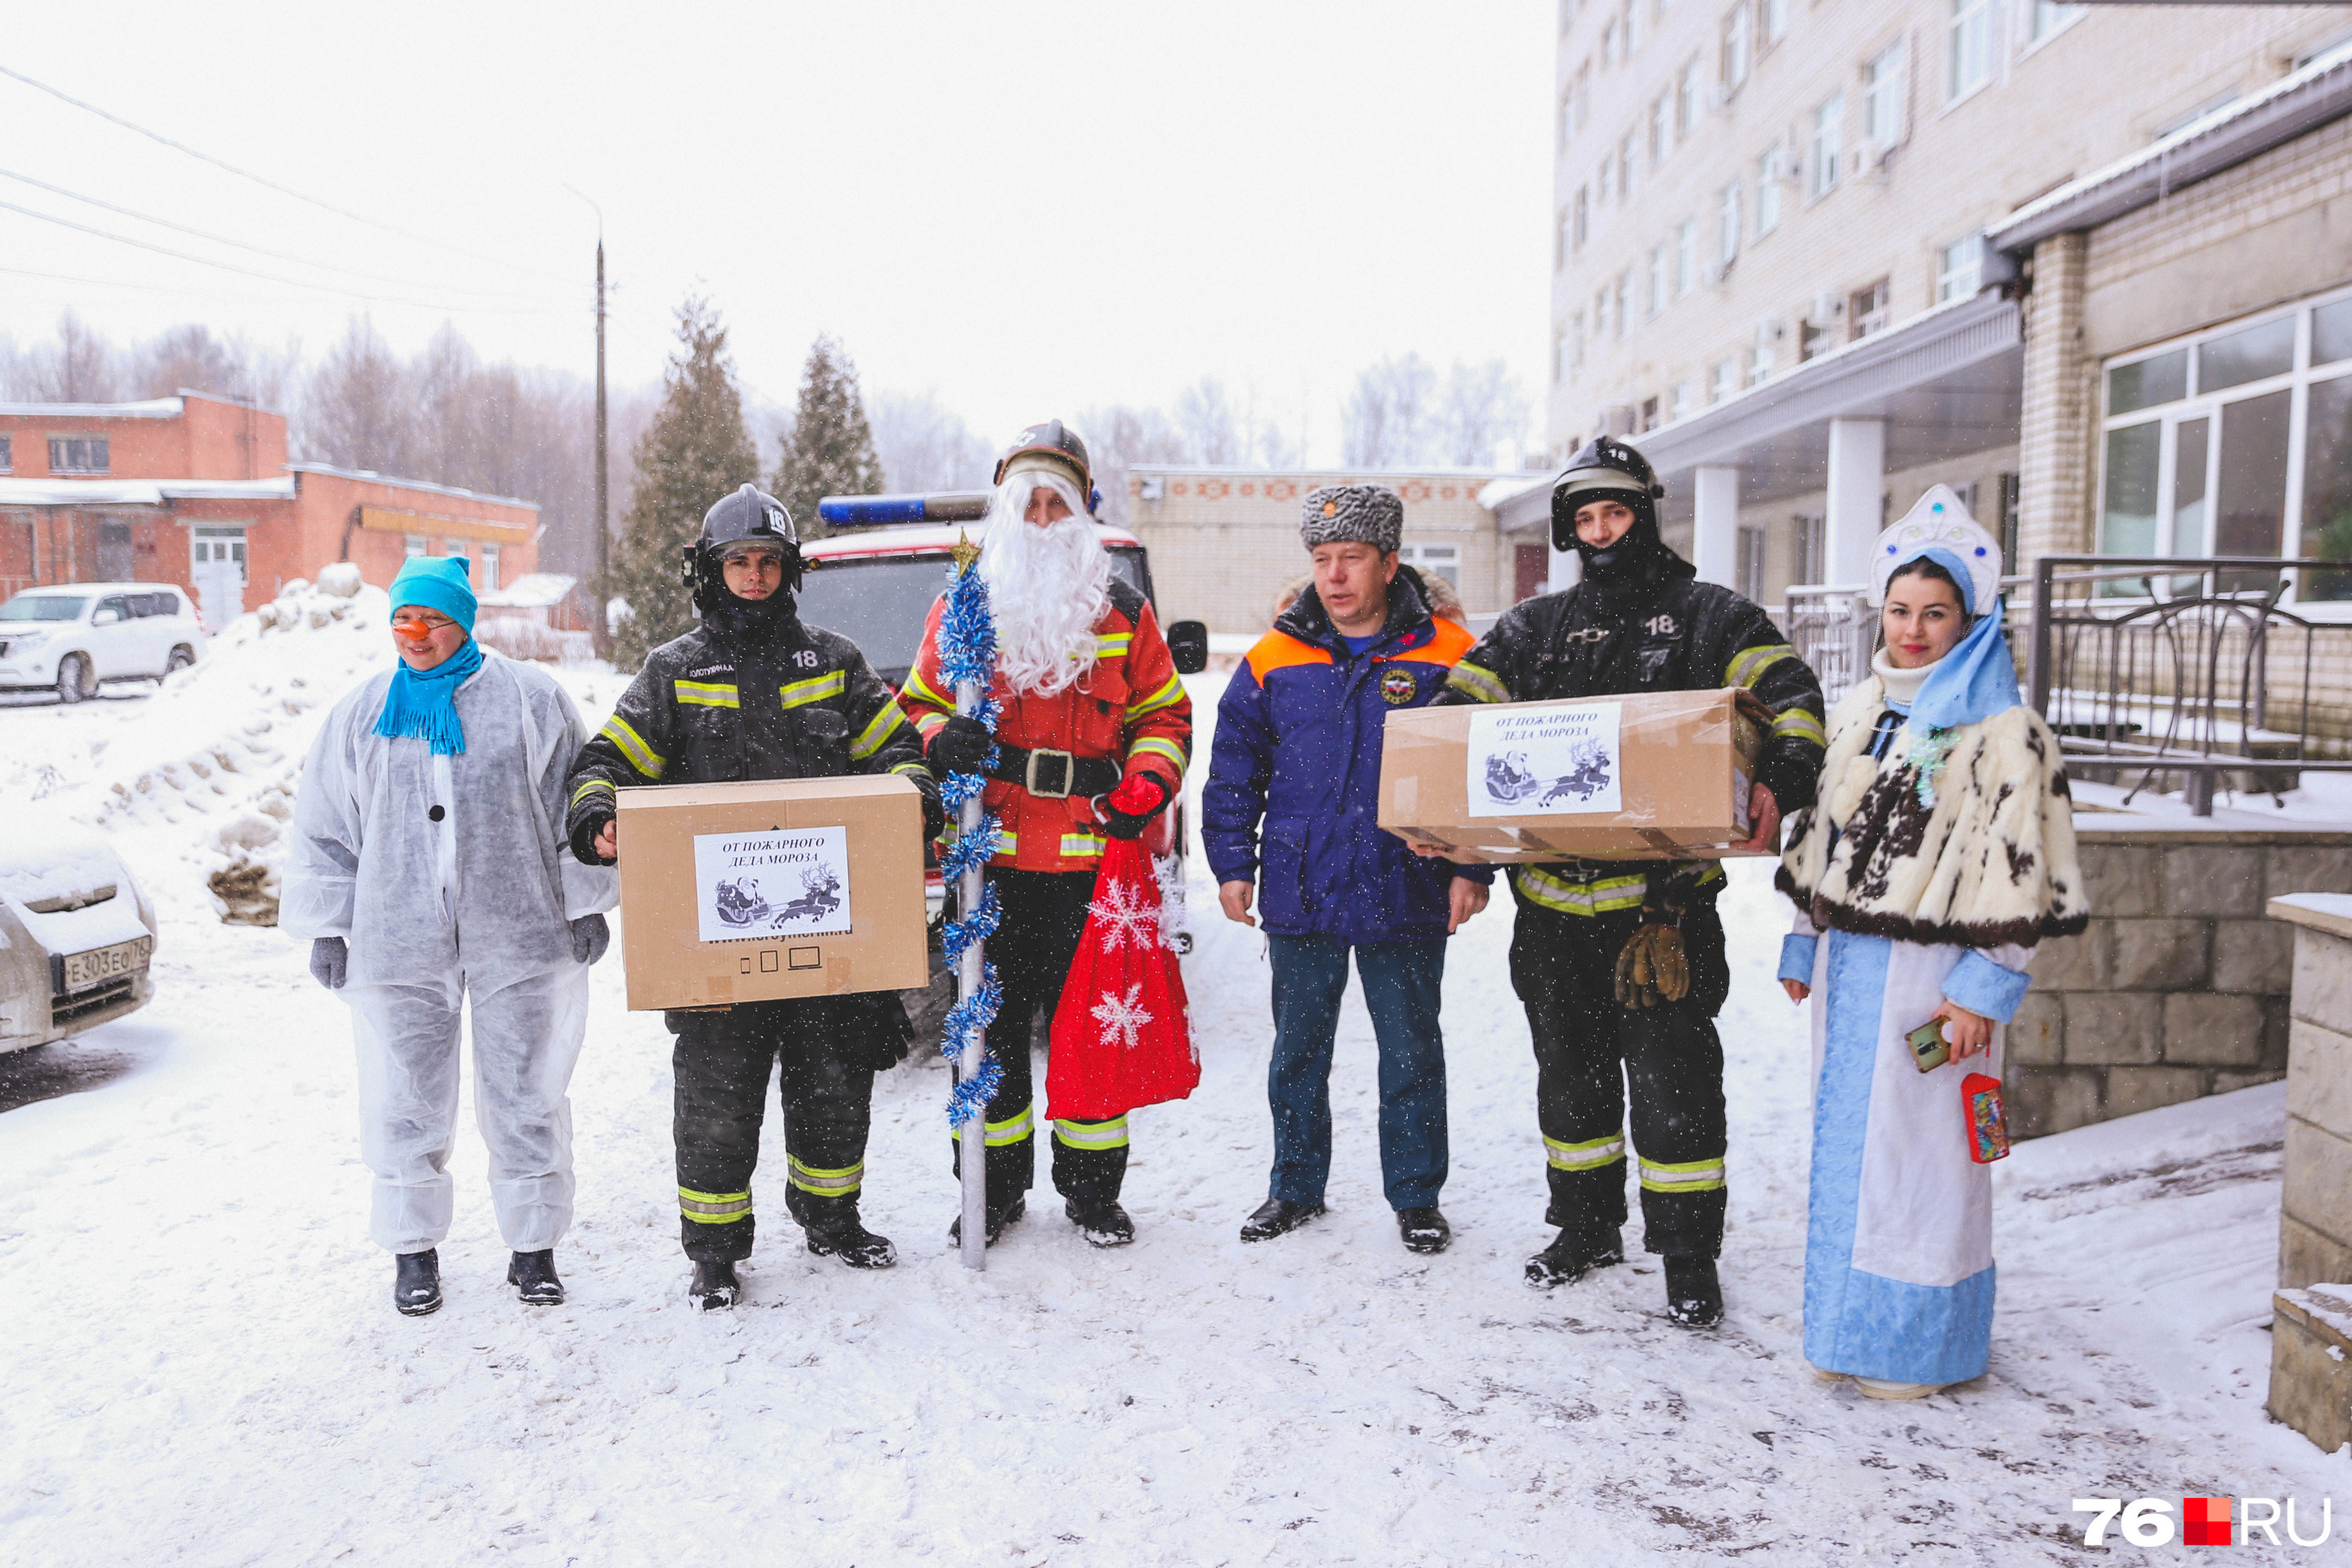 Тем, кто не смог выйти на улицу, спасатели дарили подарки внутри больницы